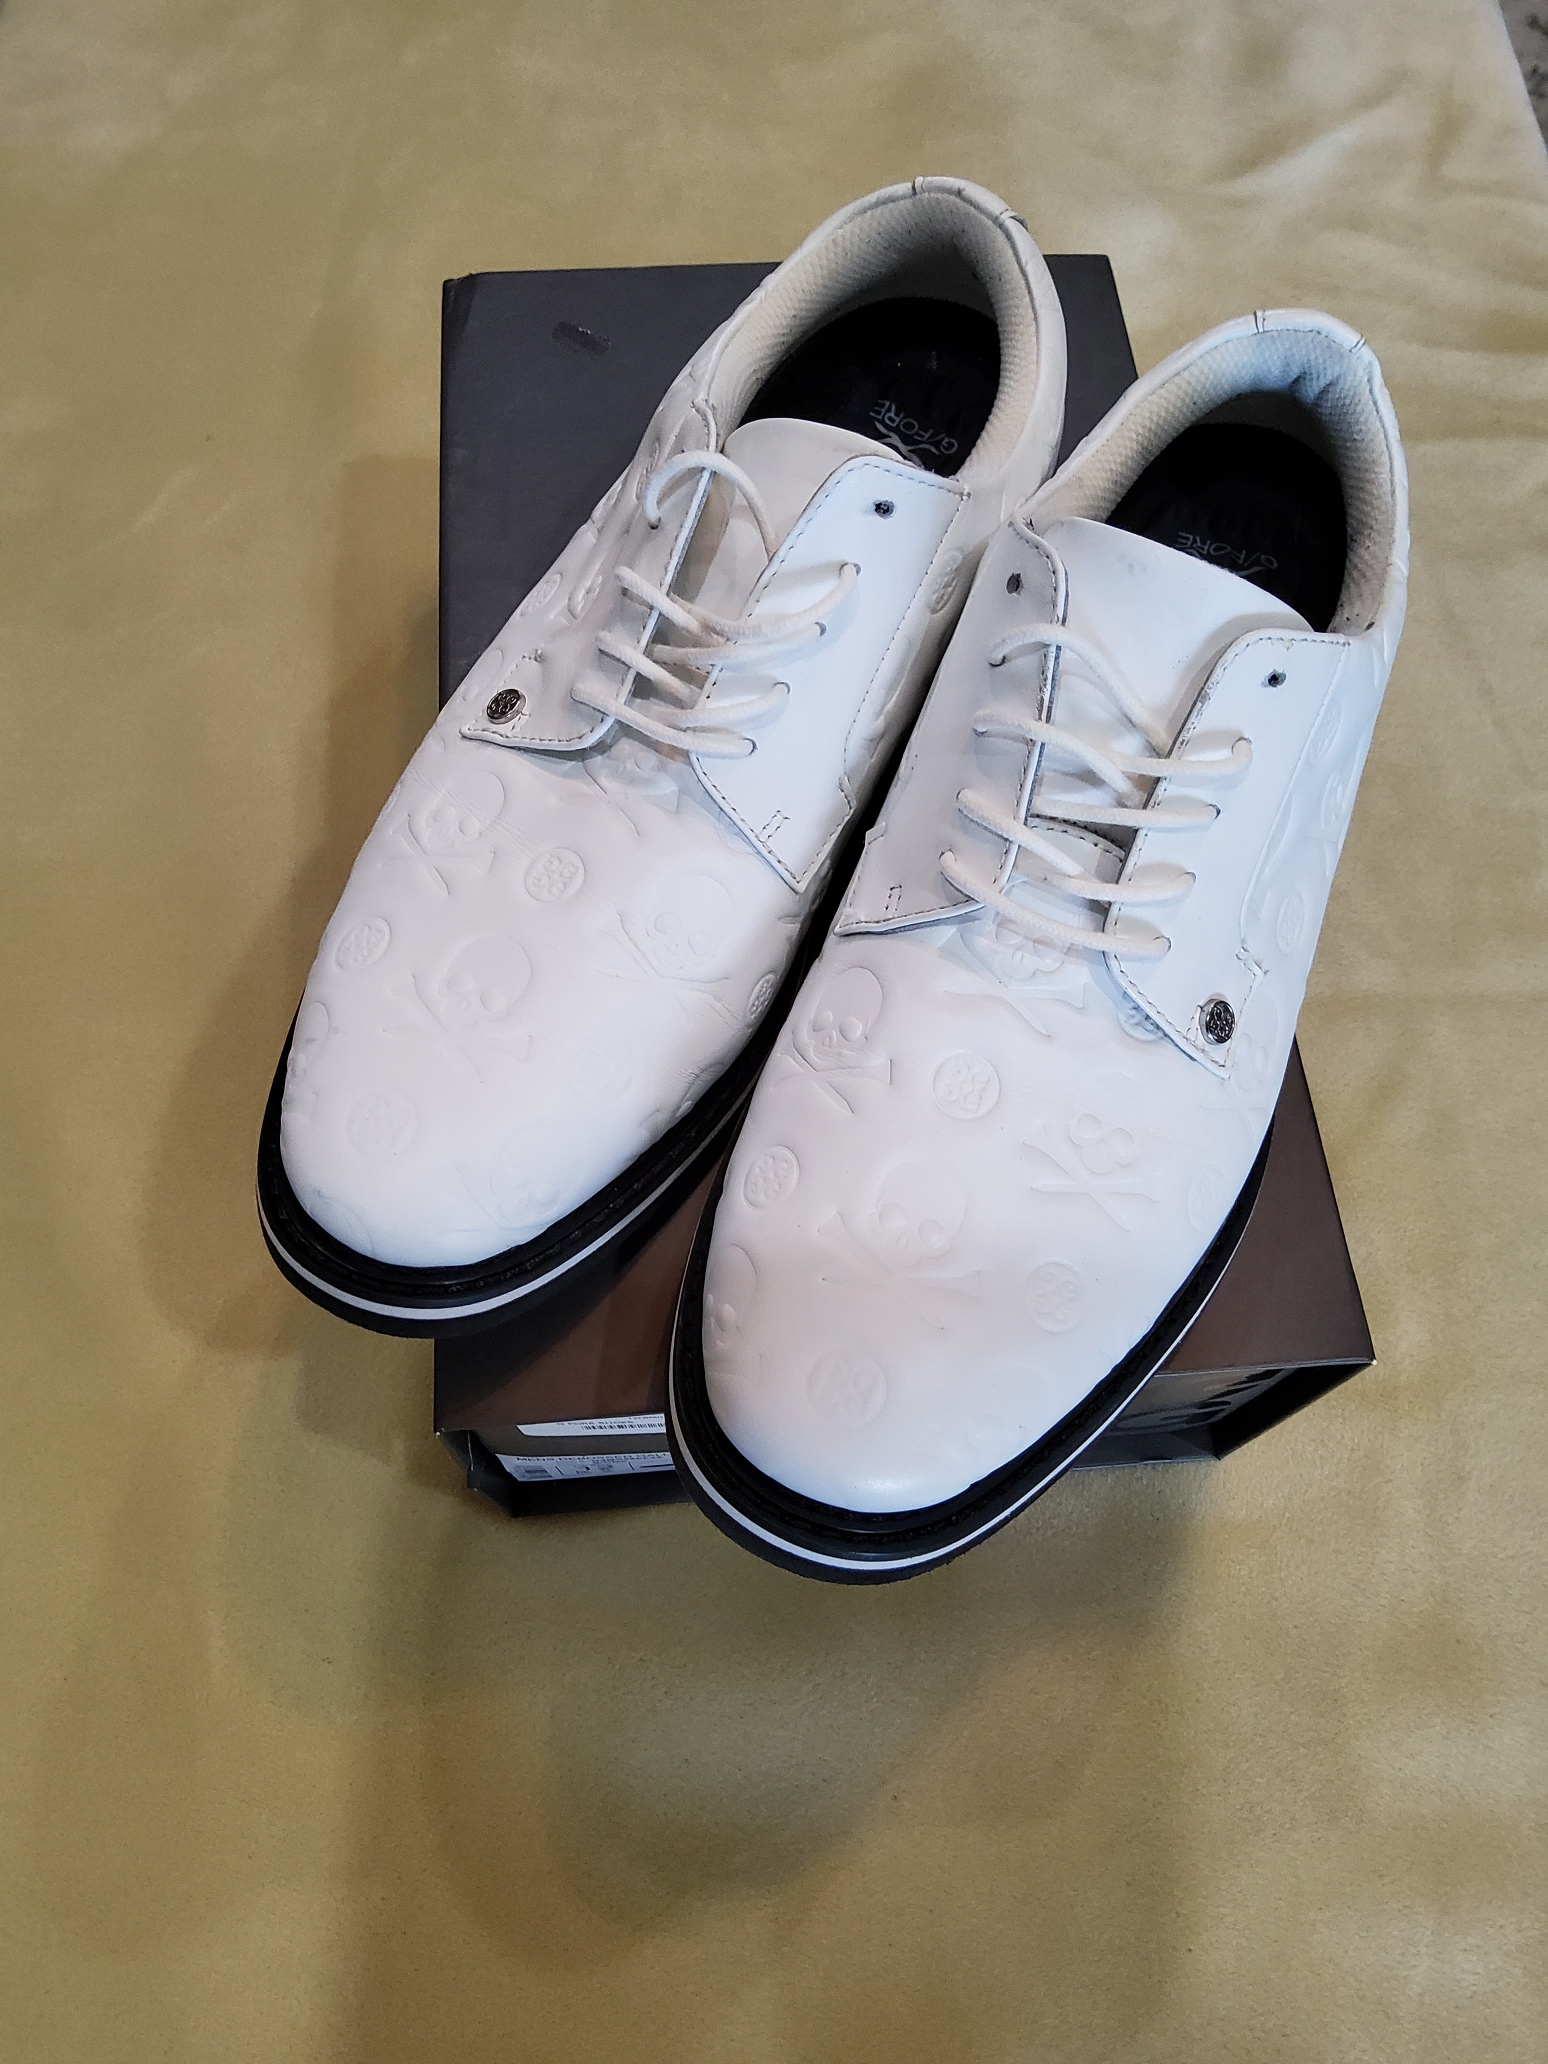 Used Men's Size 12 (Women's 13) G-Fore Skull Ebossed Gallivanter Golf Shoes